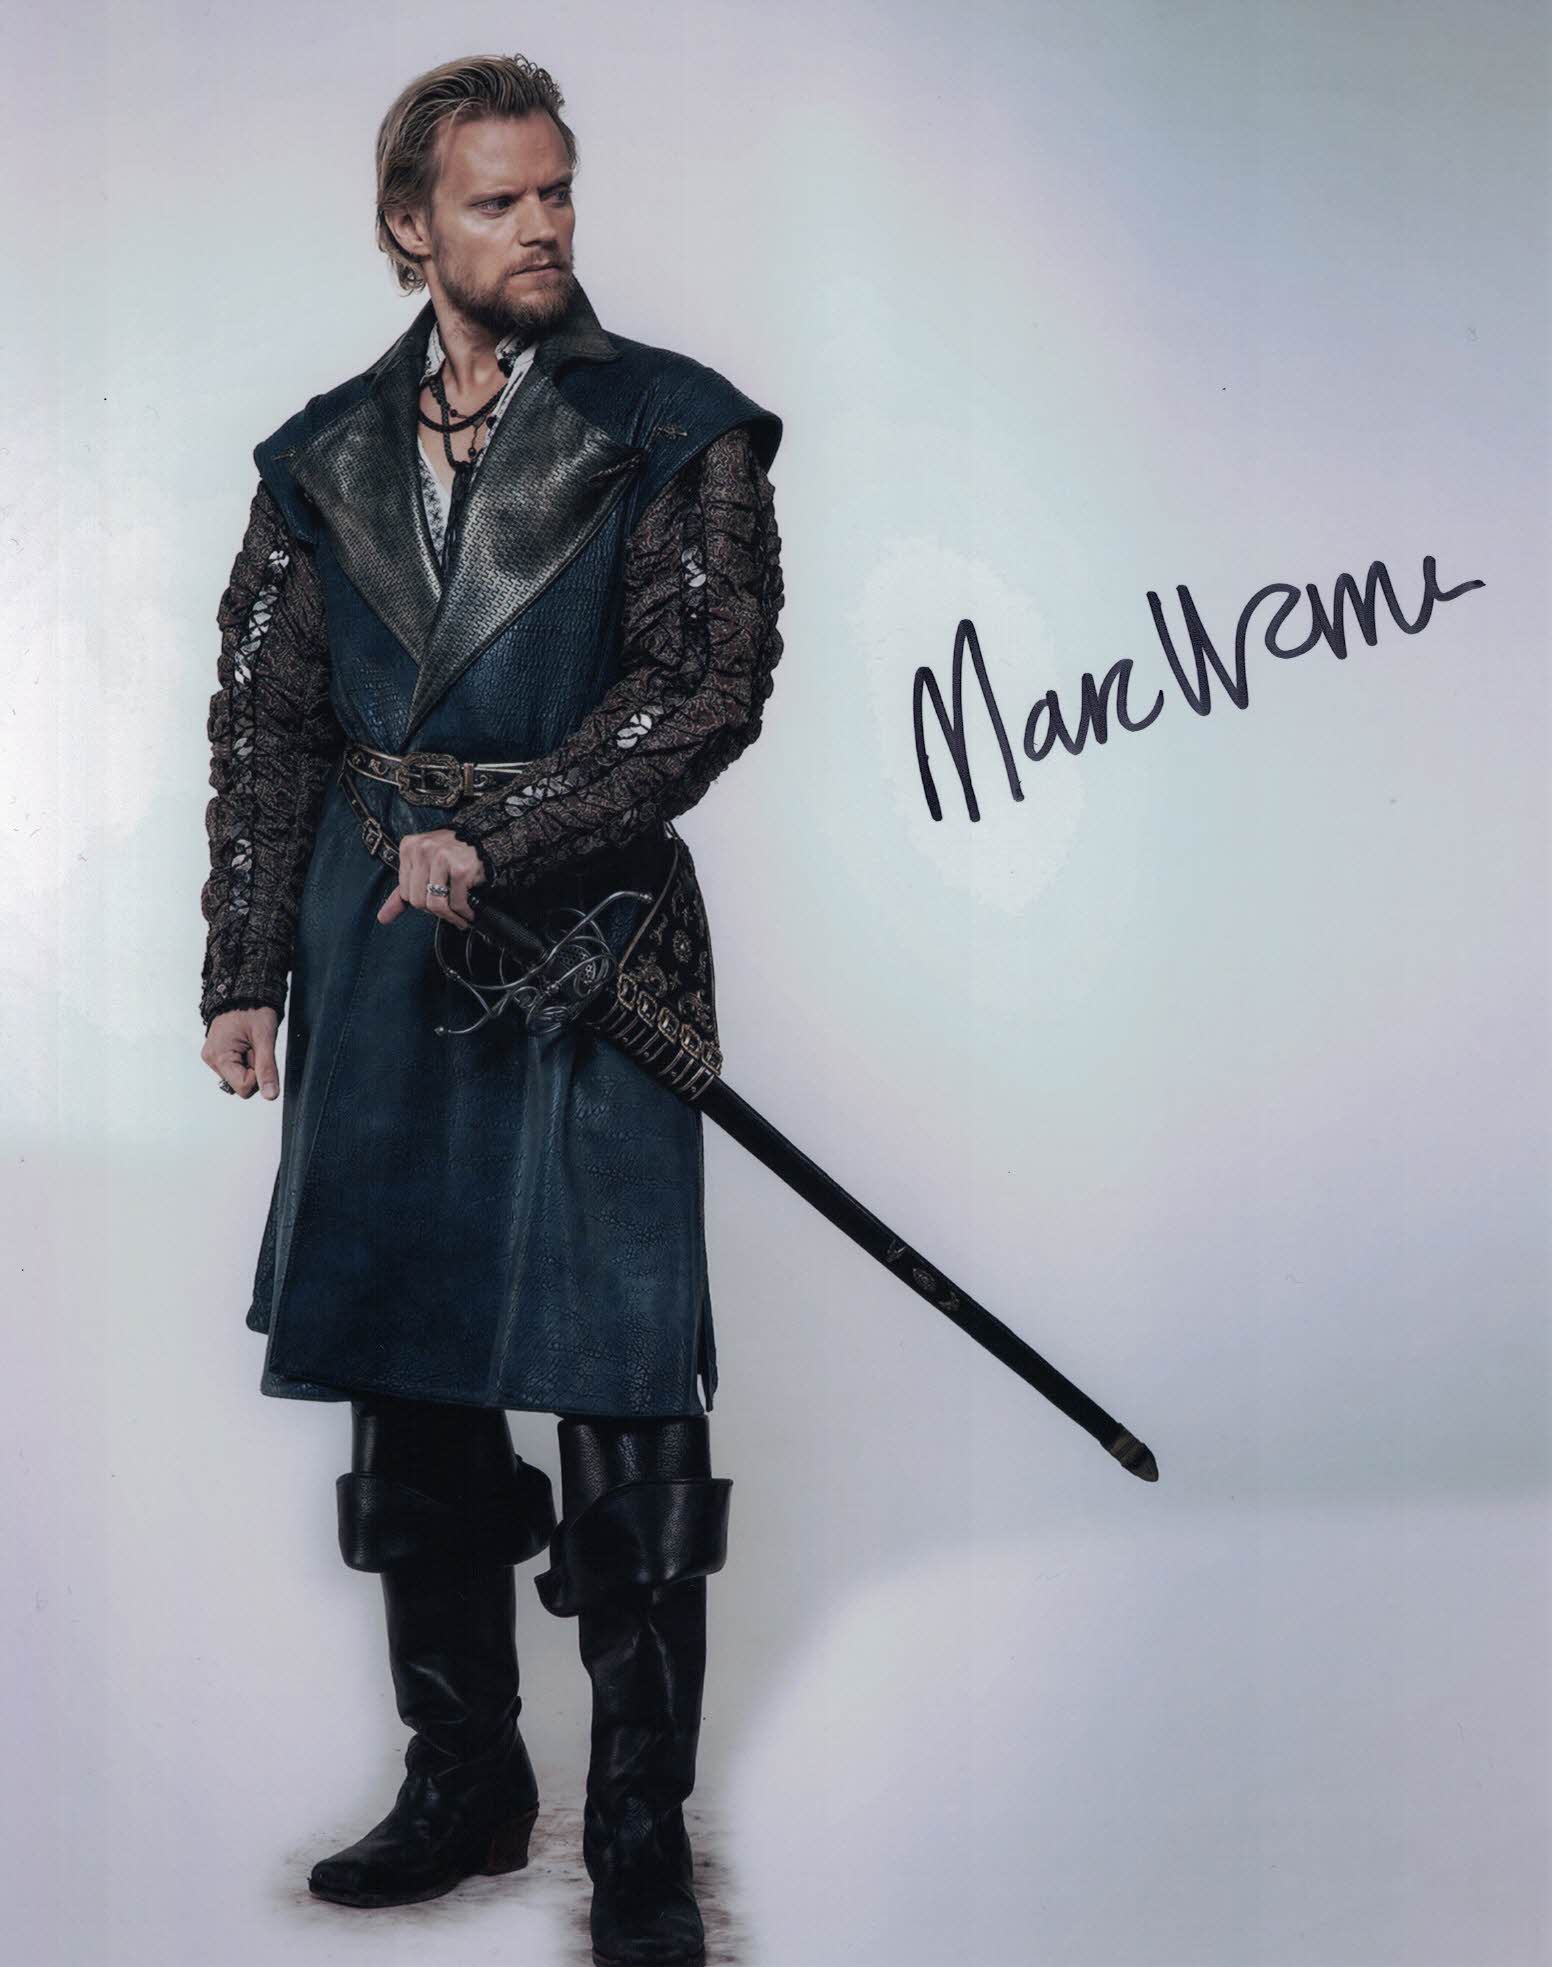 MARC WARREN - Rochefort in The Musketeers  hand signed 10 x 8 photo